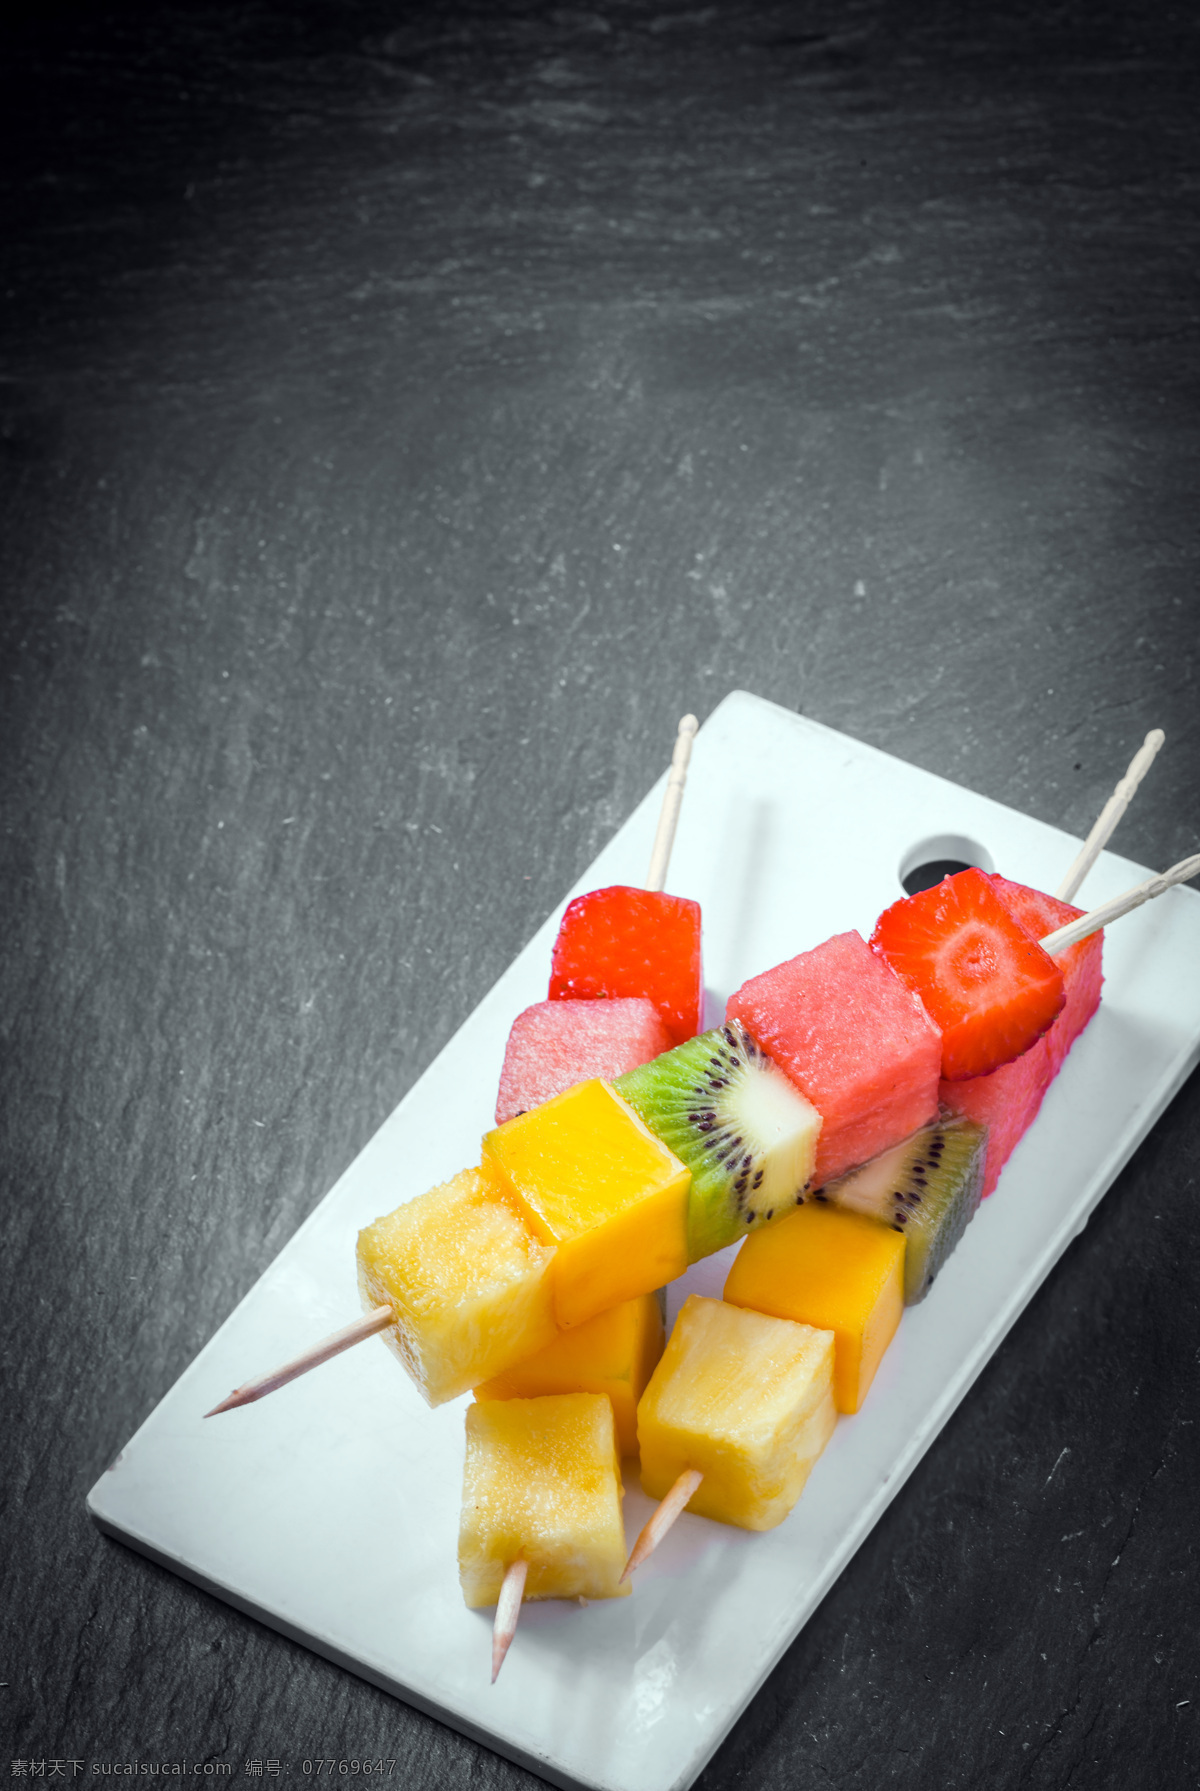 盘子 内 水果 串 方块 食物 美食 水果图片 餐饮美食